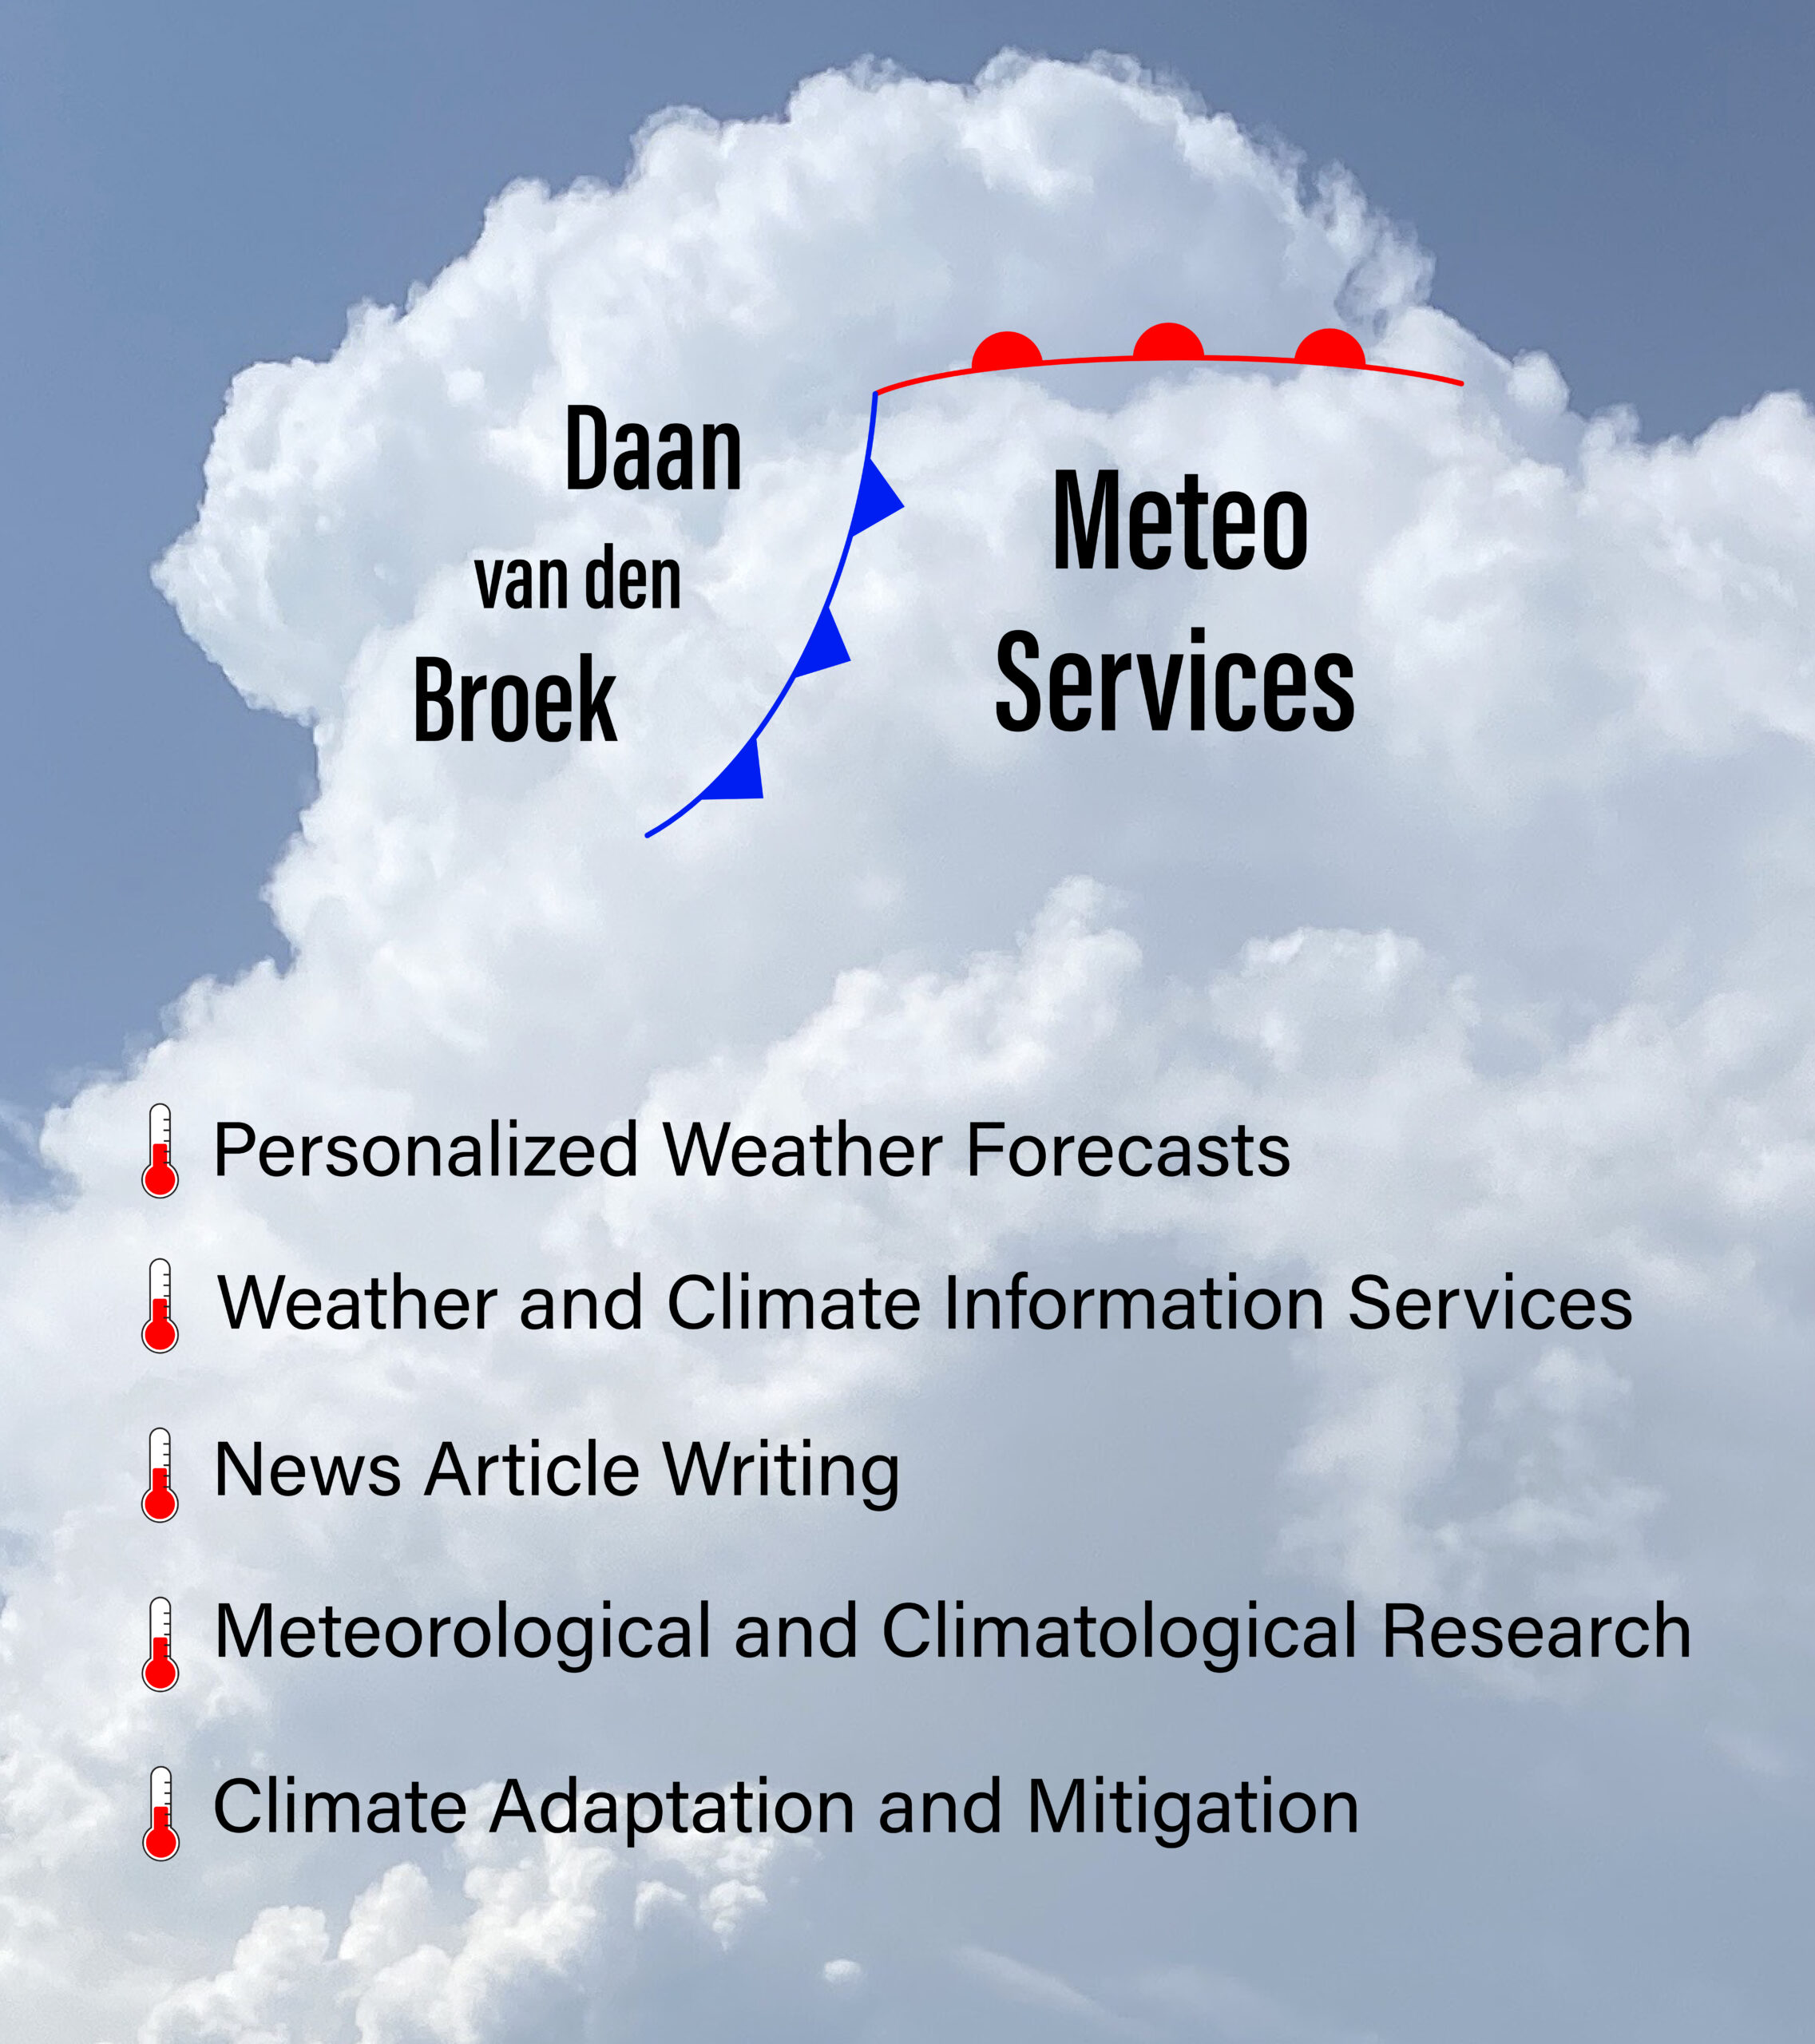 Daan van den Broek Meteo Services - Weather Services - Climate Services